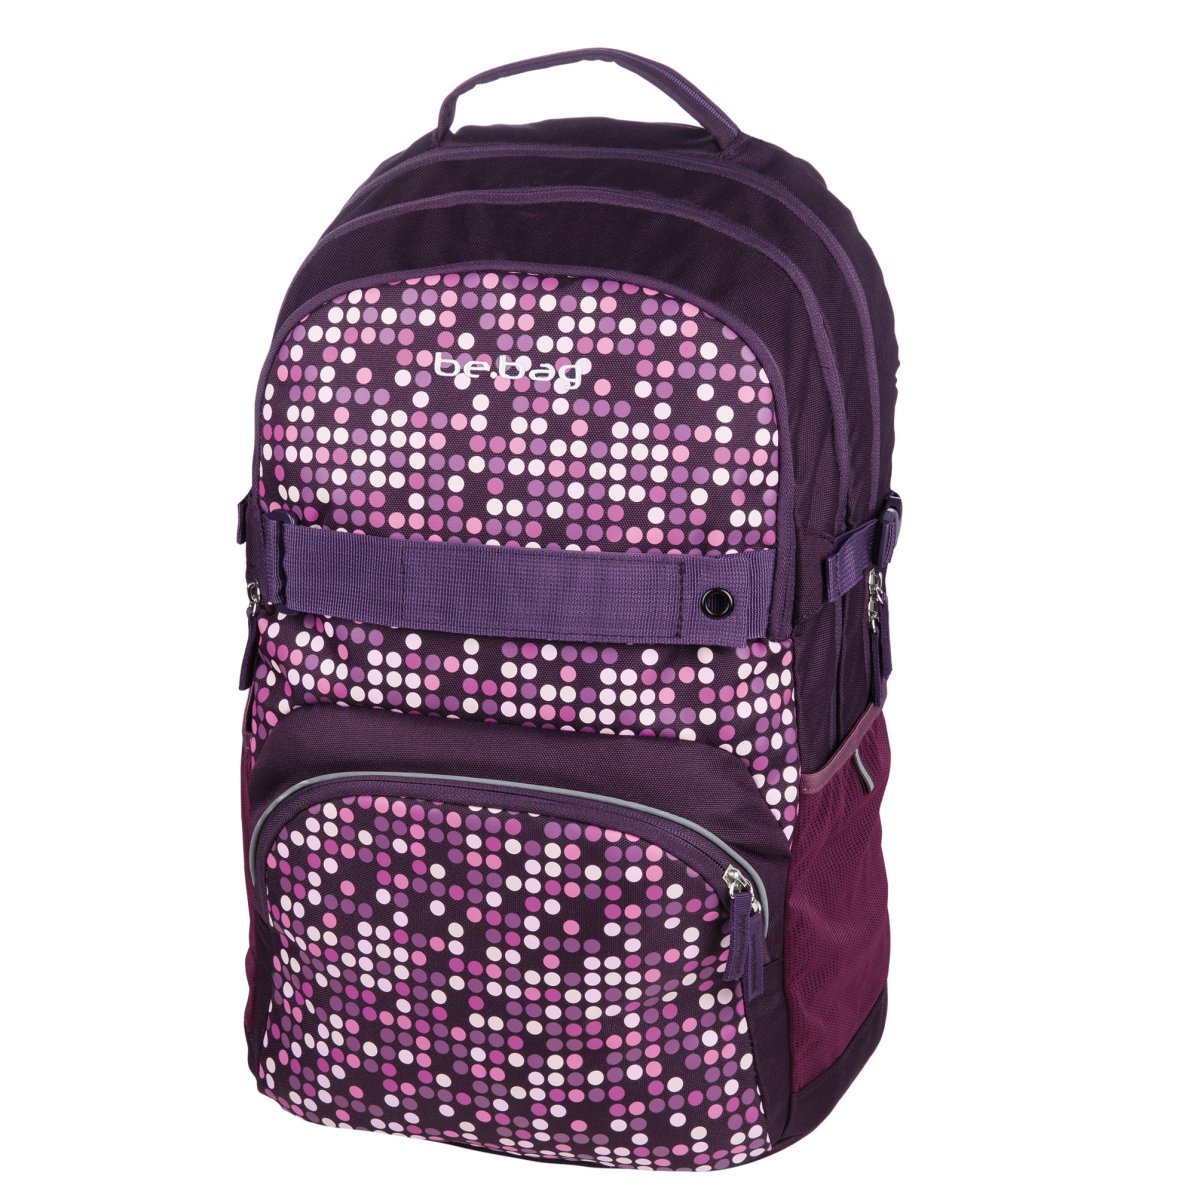 Adventurer arrival eel school backpack be.bag cube Spotlights - Herlitz